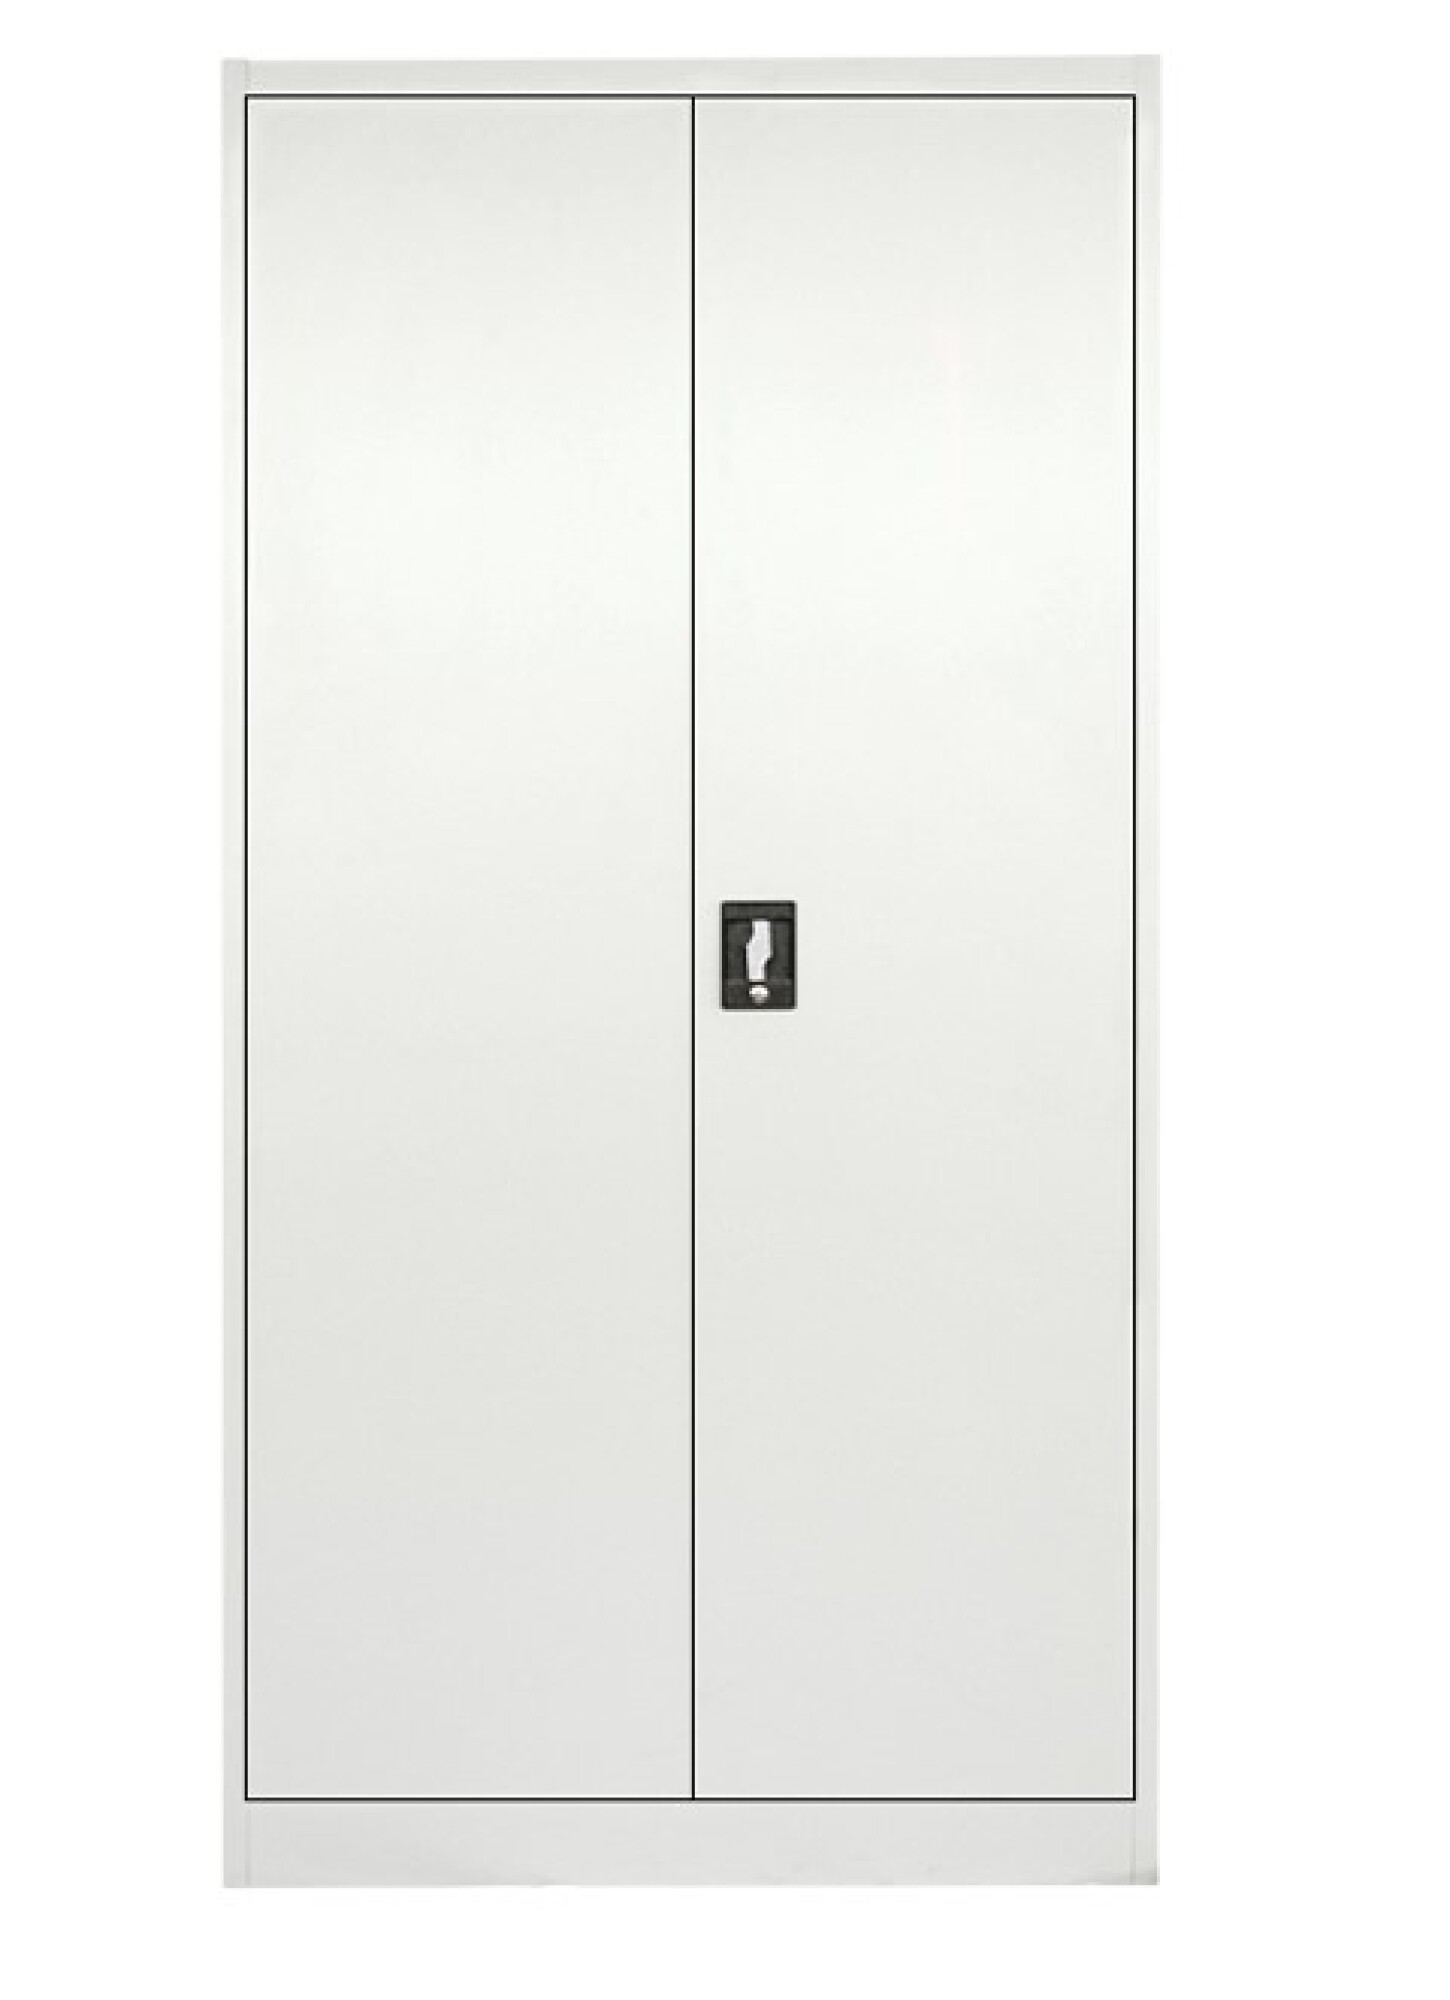 Armario metálico con 4 estantes y puertas batientes de oficina